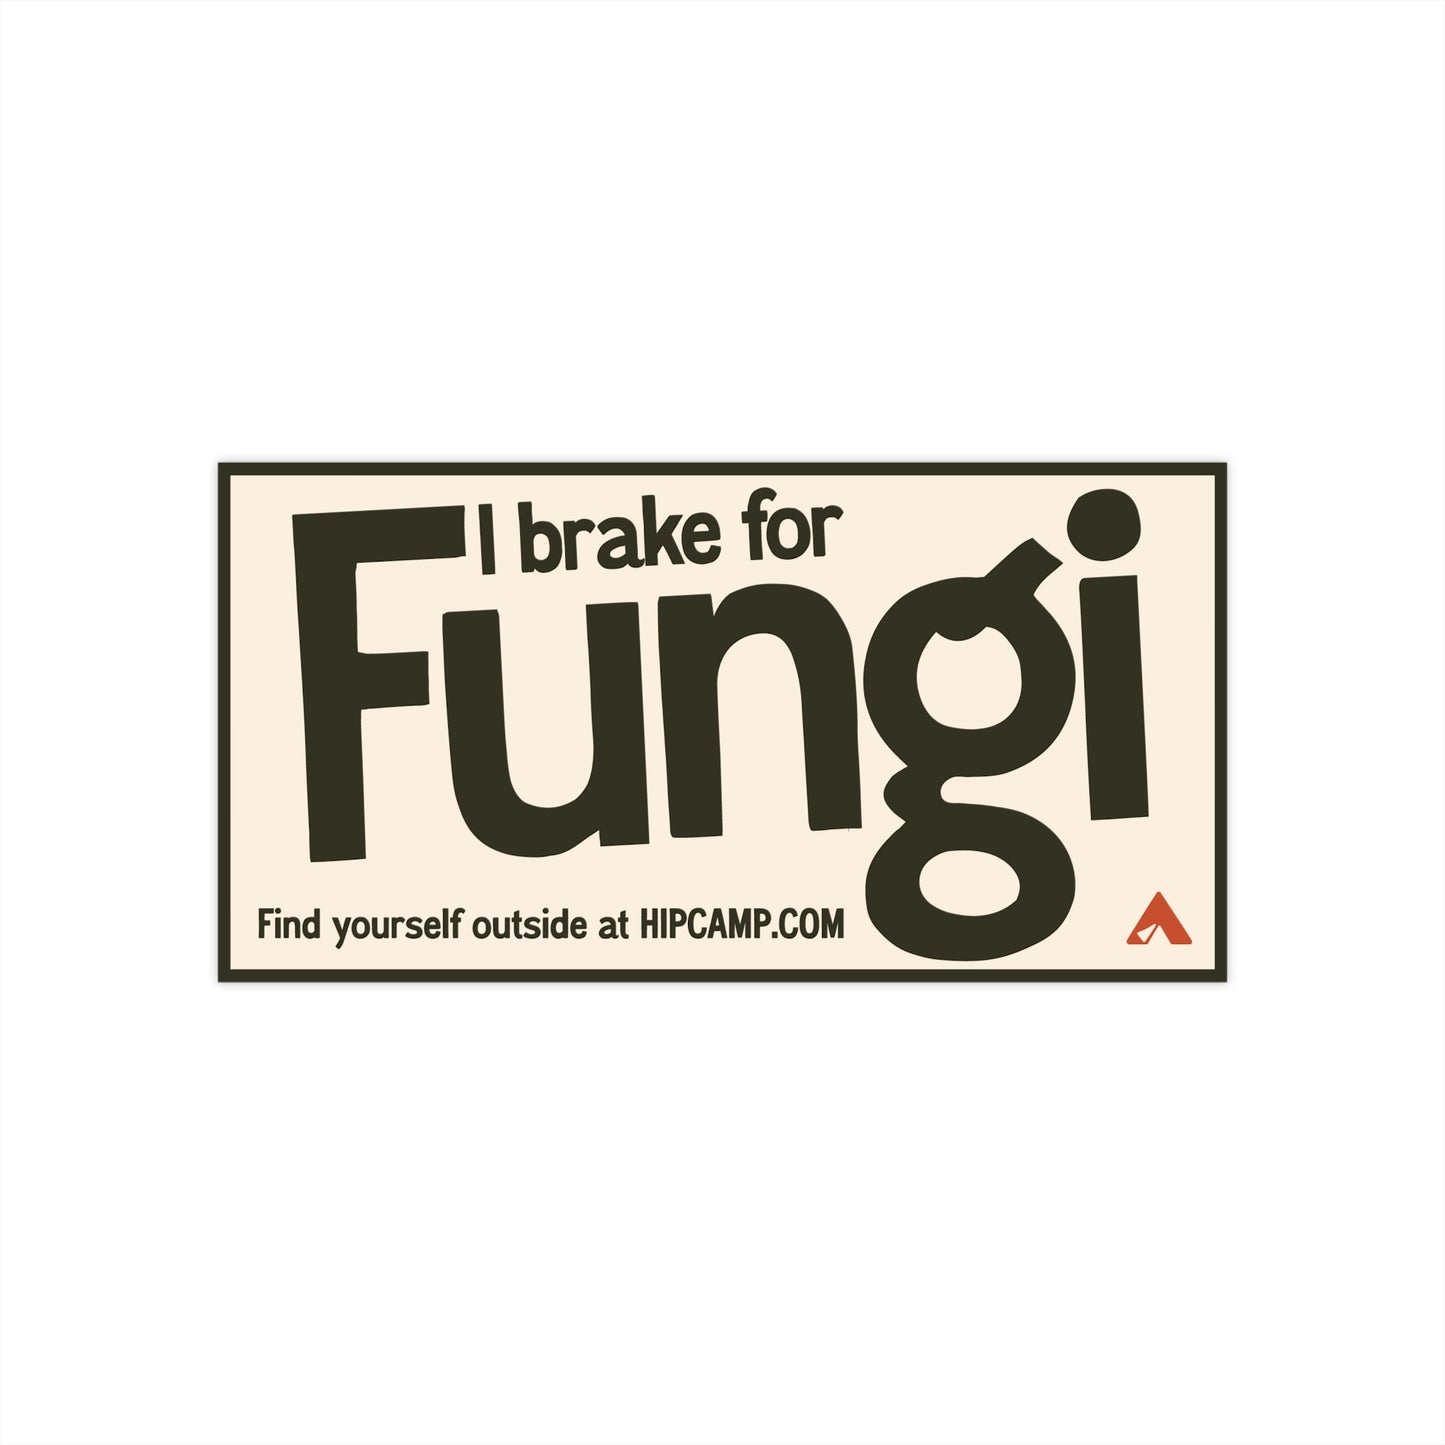 "I brake for Fungi" Bumper Sticker